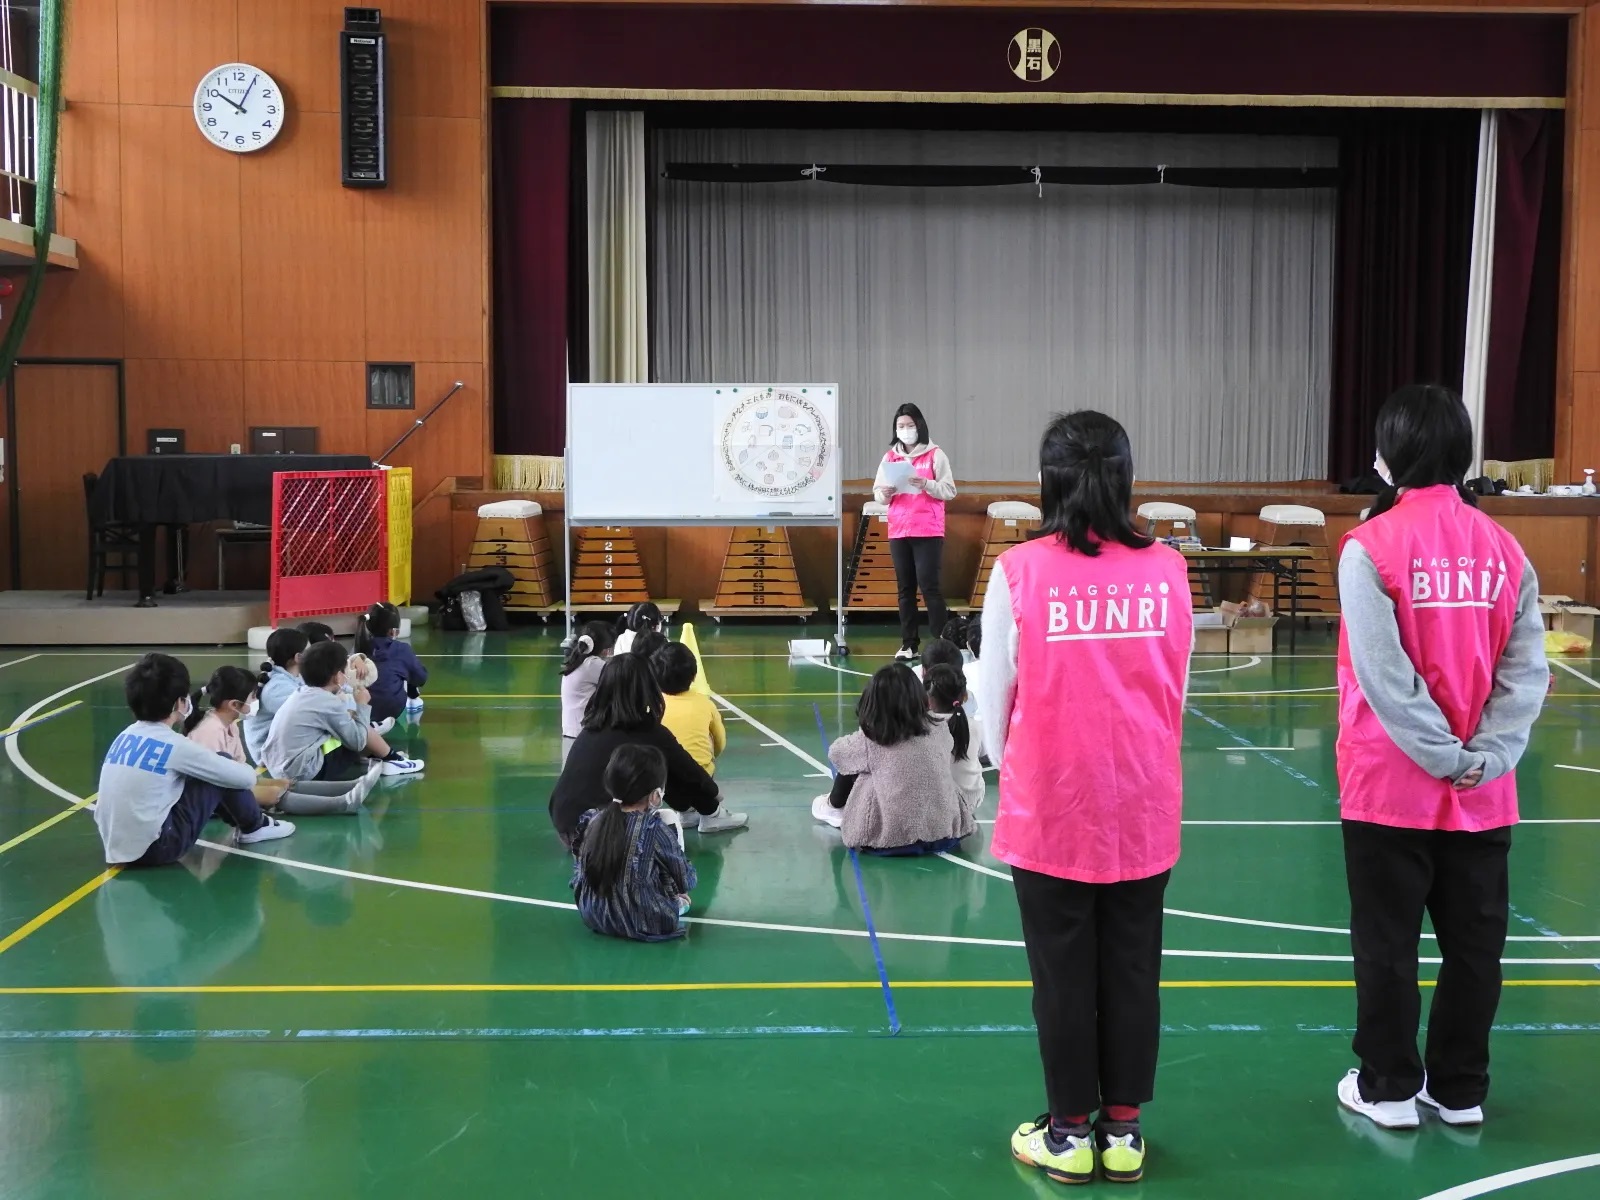 名古屋市教育委員会主催「土曜学習プログラム」を実施しました